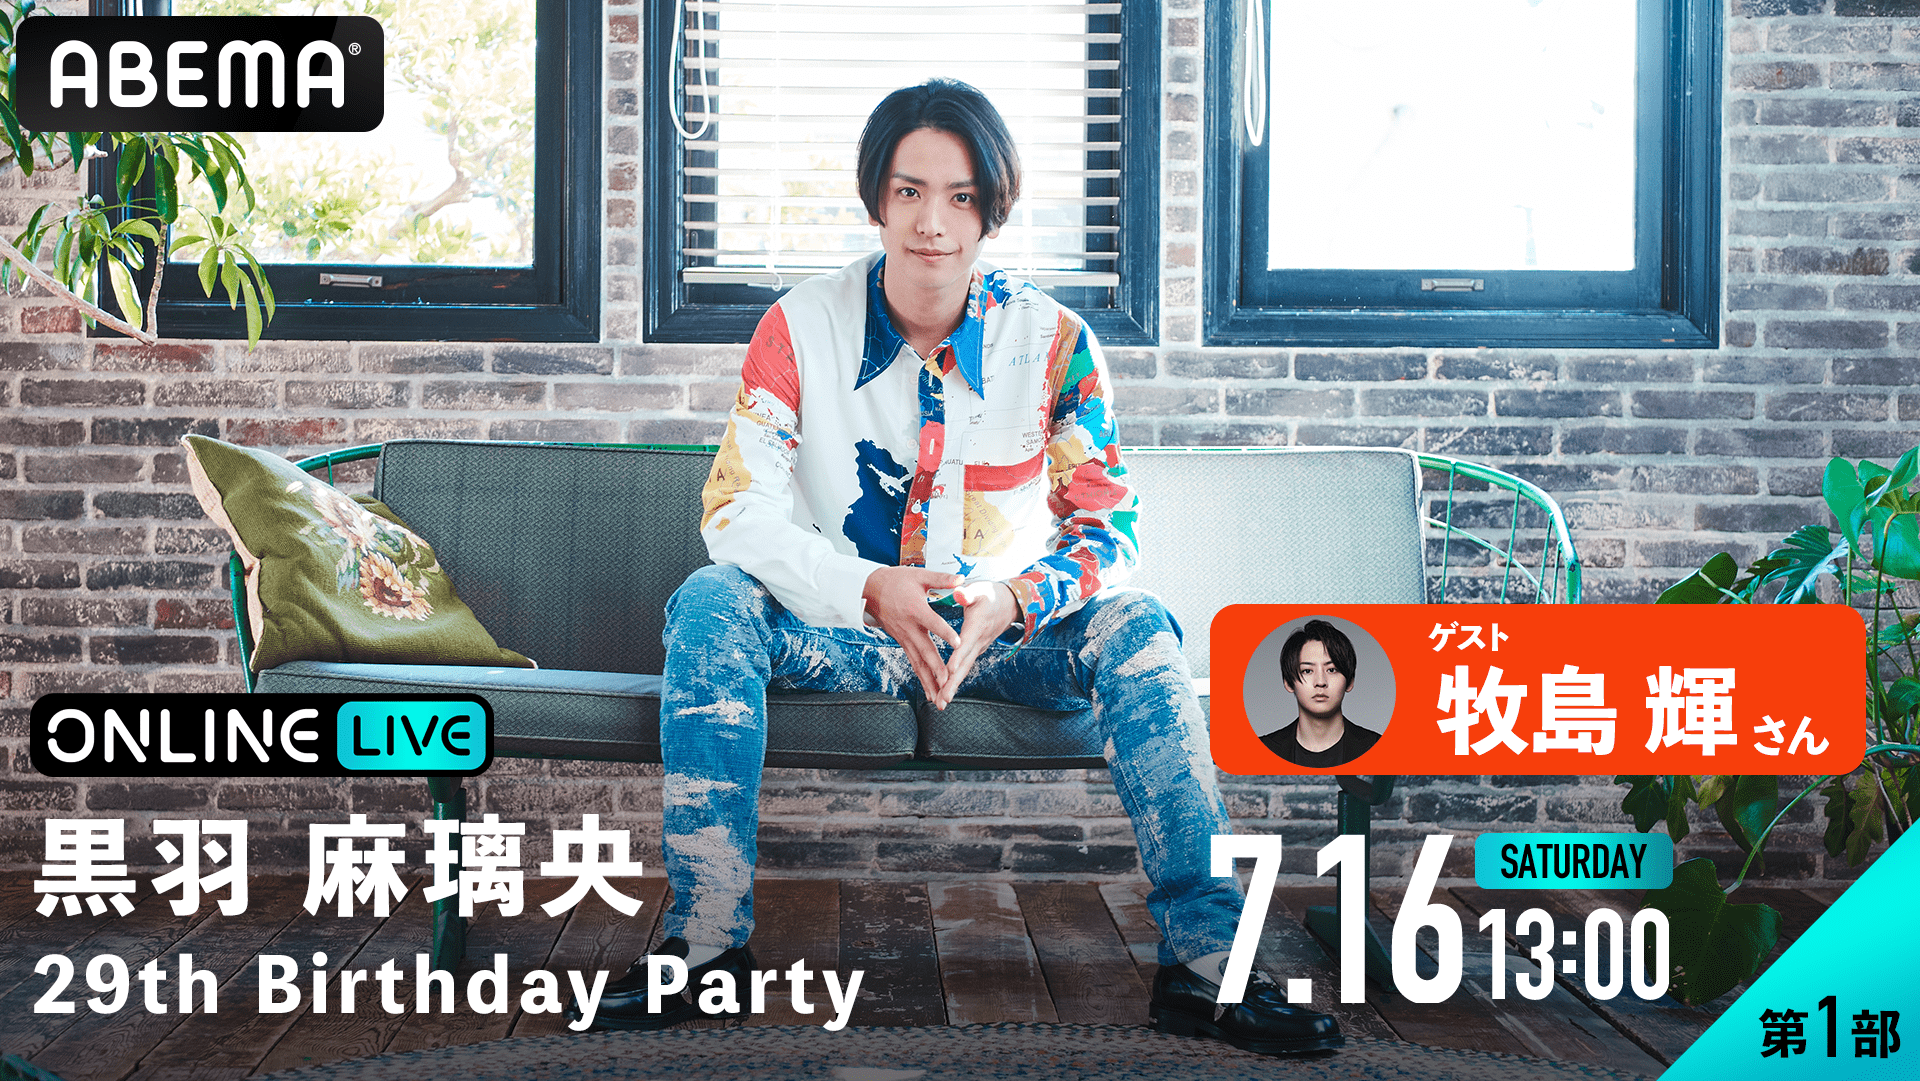 黒羽麻璃央 29th Birthday Party | ABEMA PPV ONLINE LIVE | ABEMA